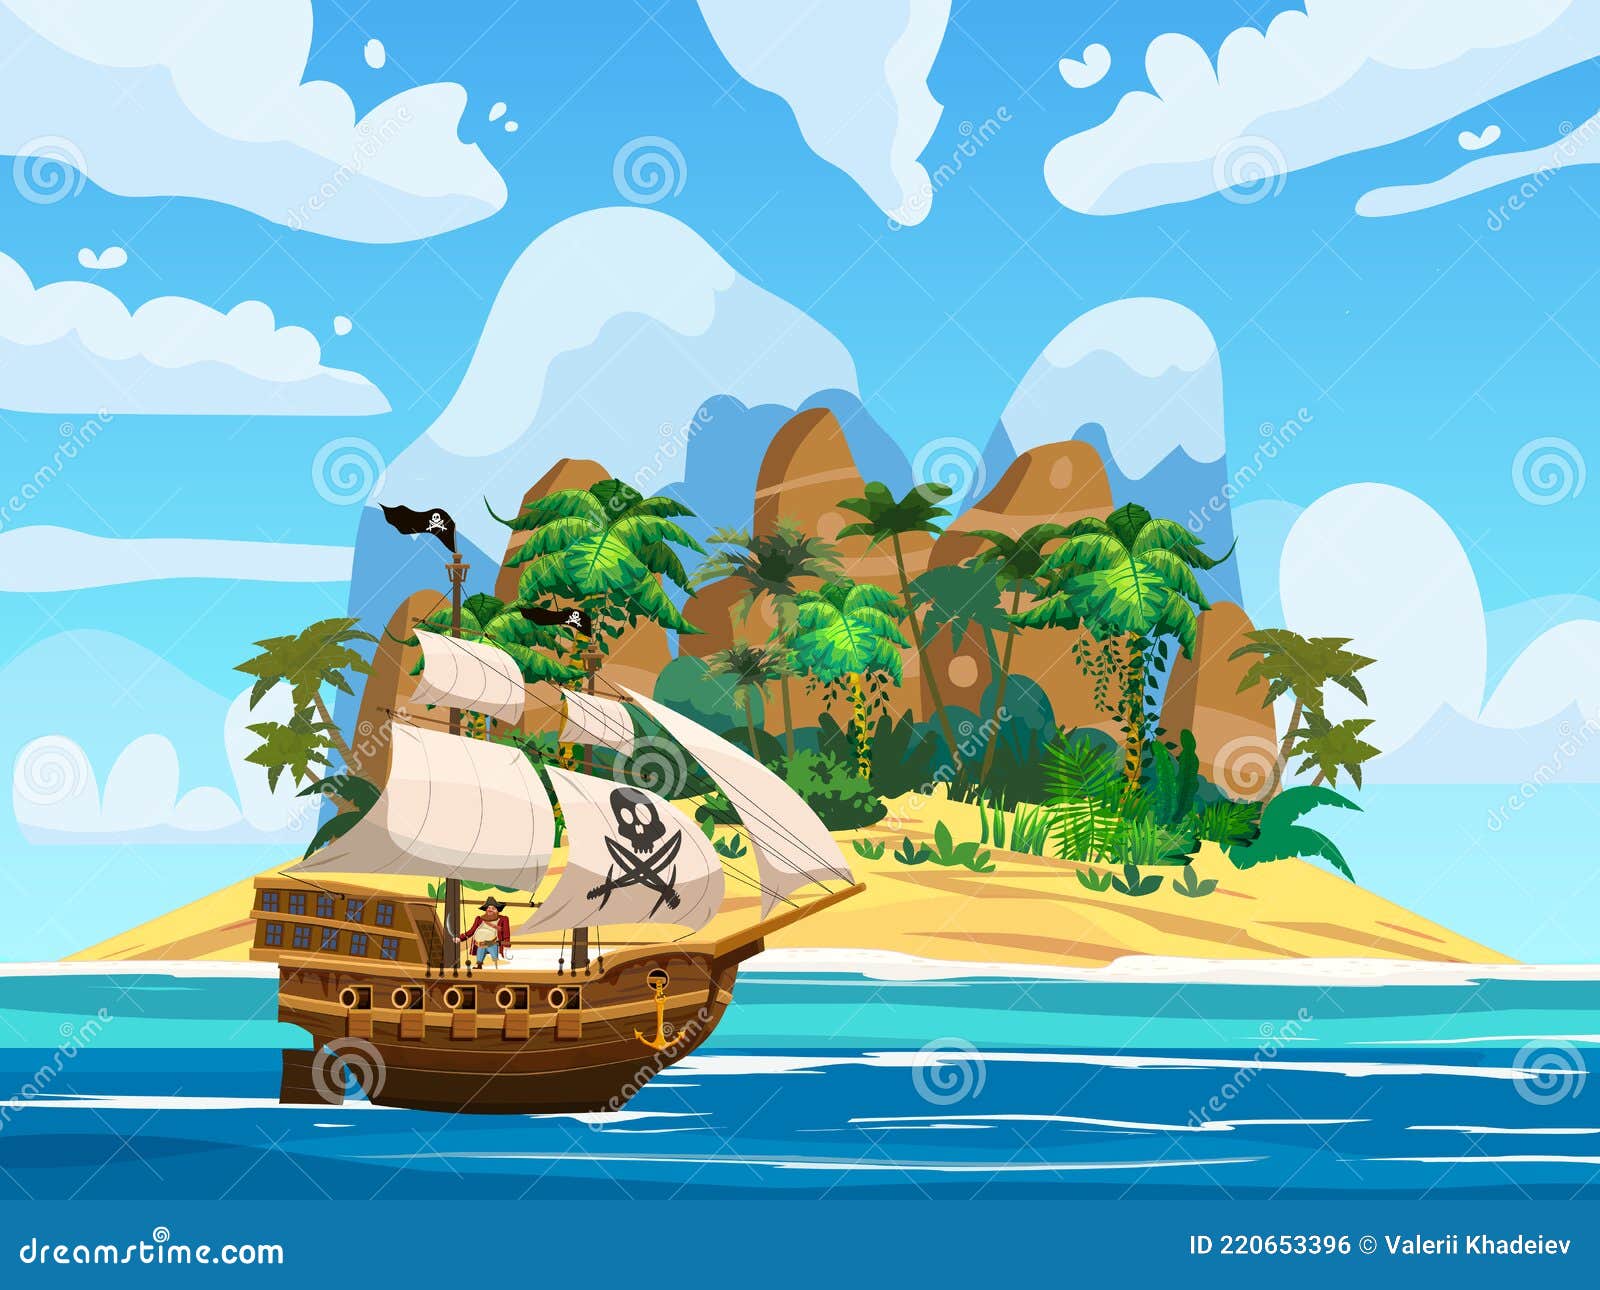 Bateau Pirate Sous Voile Dans L'océan île Trésor Palmiers